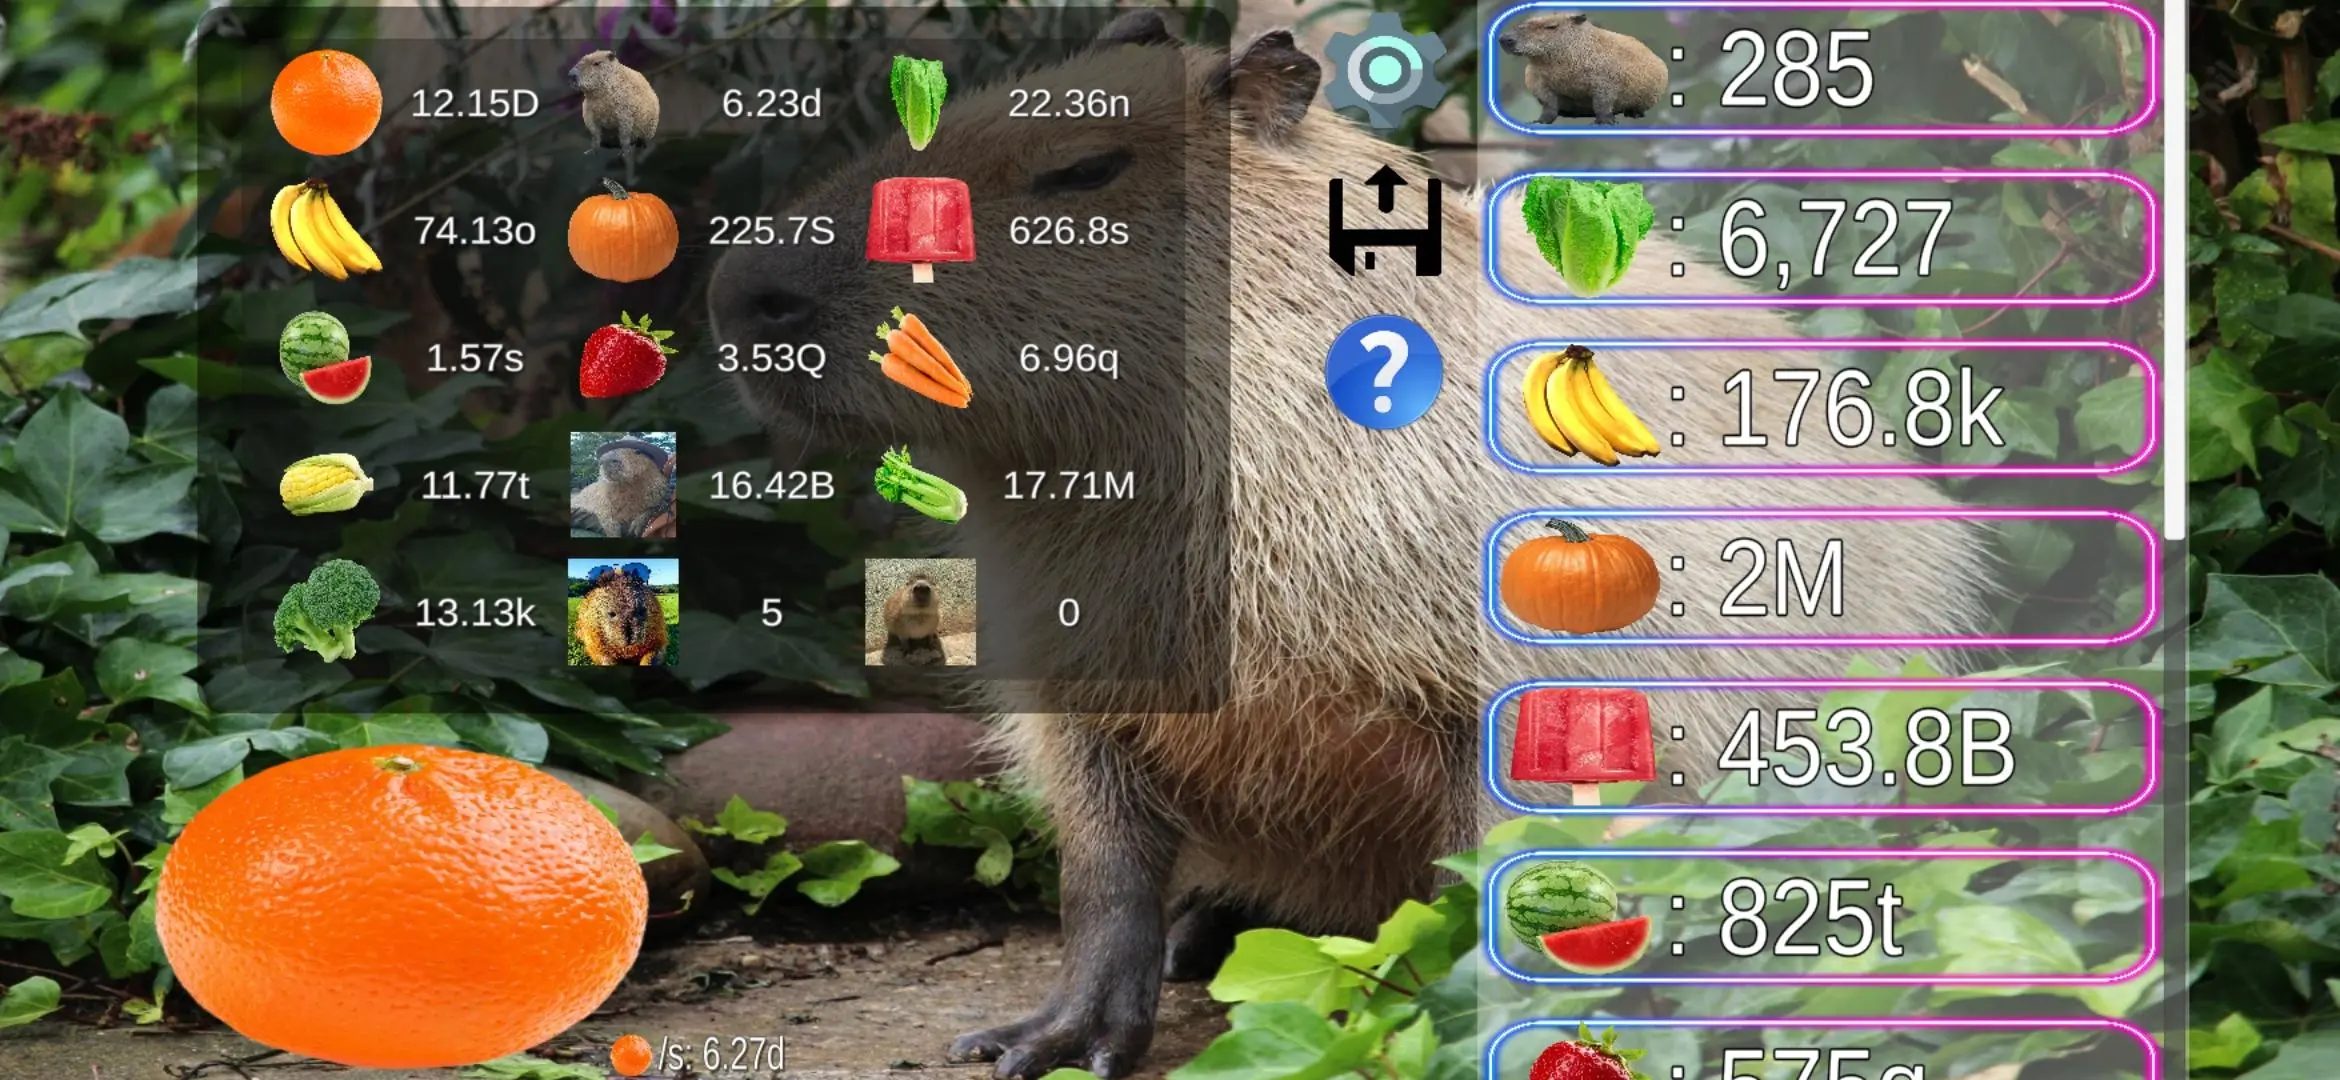 Baixe Capybara Clicker no PC